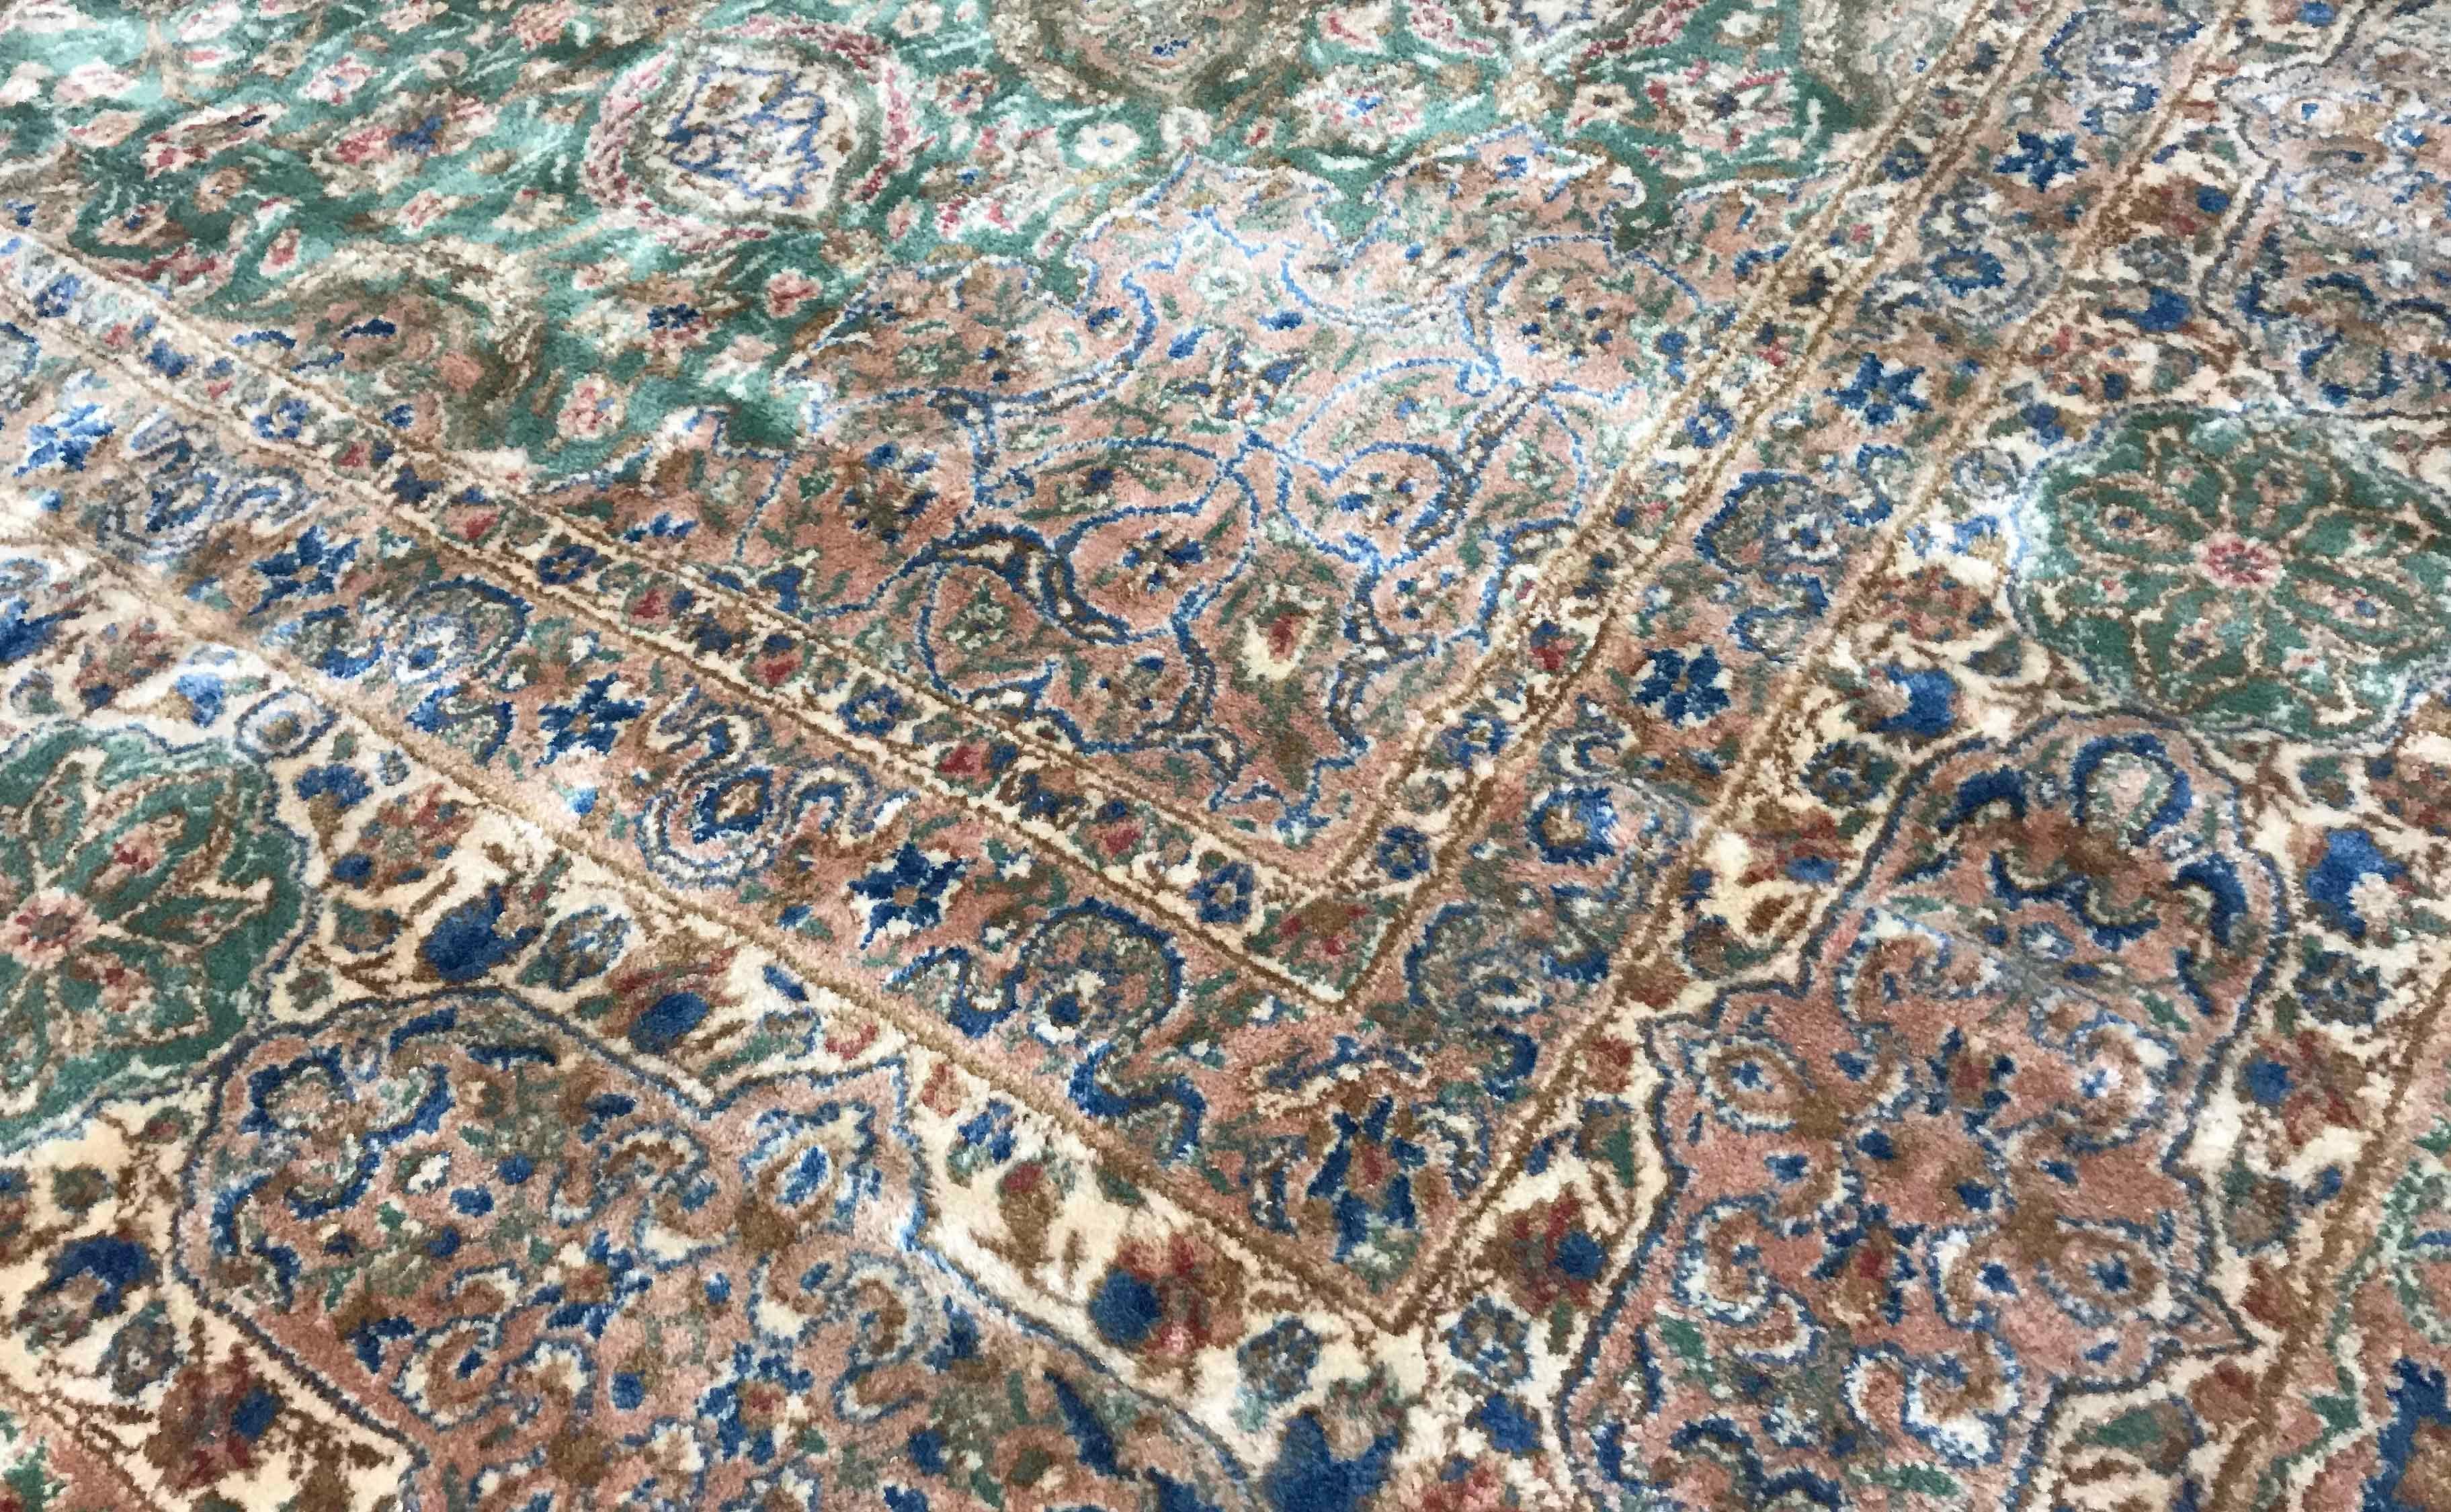 Alter persischer Kerman-Teppich, um 1940. Dieser Teppich ist wirklich ein Kunstwerk, auf einem grünen Feld gibt es ein kompliziertes florales Muster, das aus einem zentralen Medaillon besteht, das von großen Blattmustern umgeben ist, das dann selbst